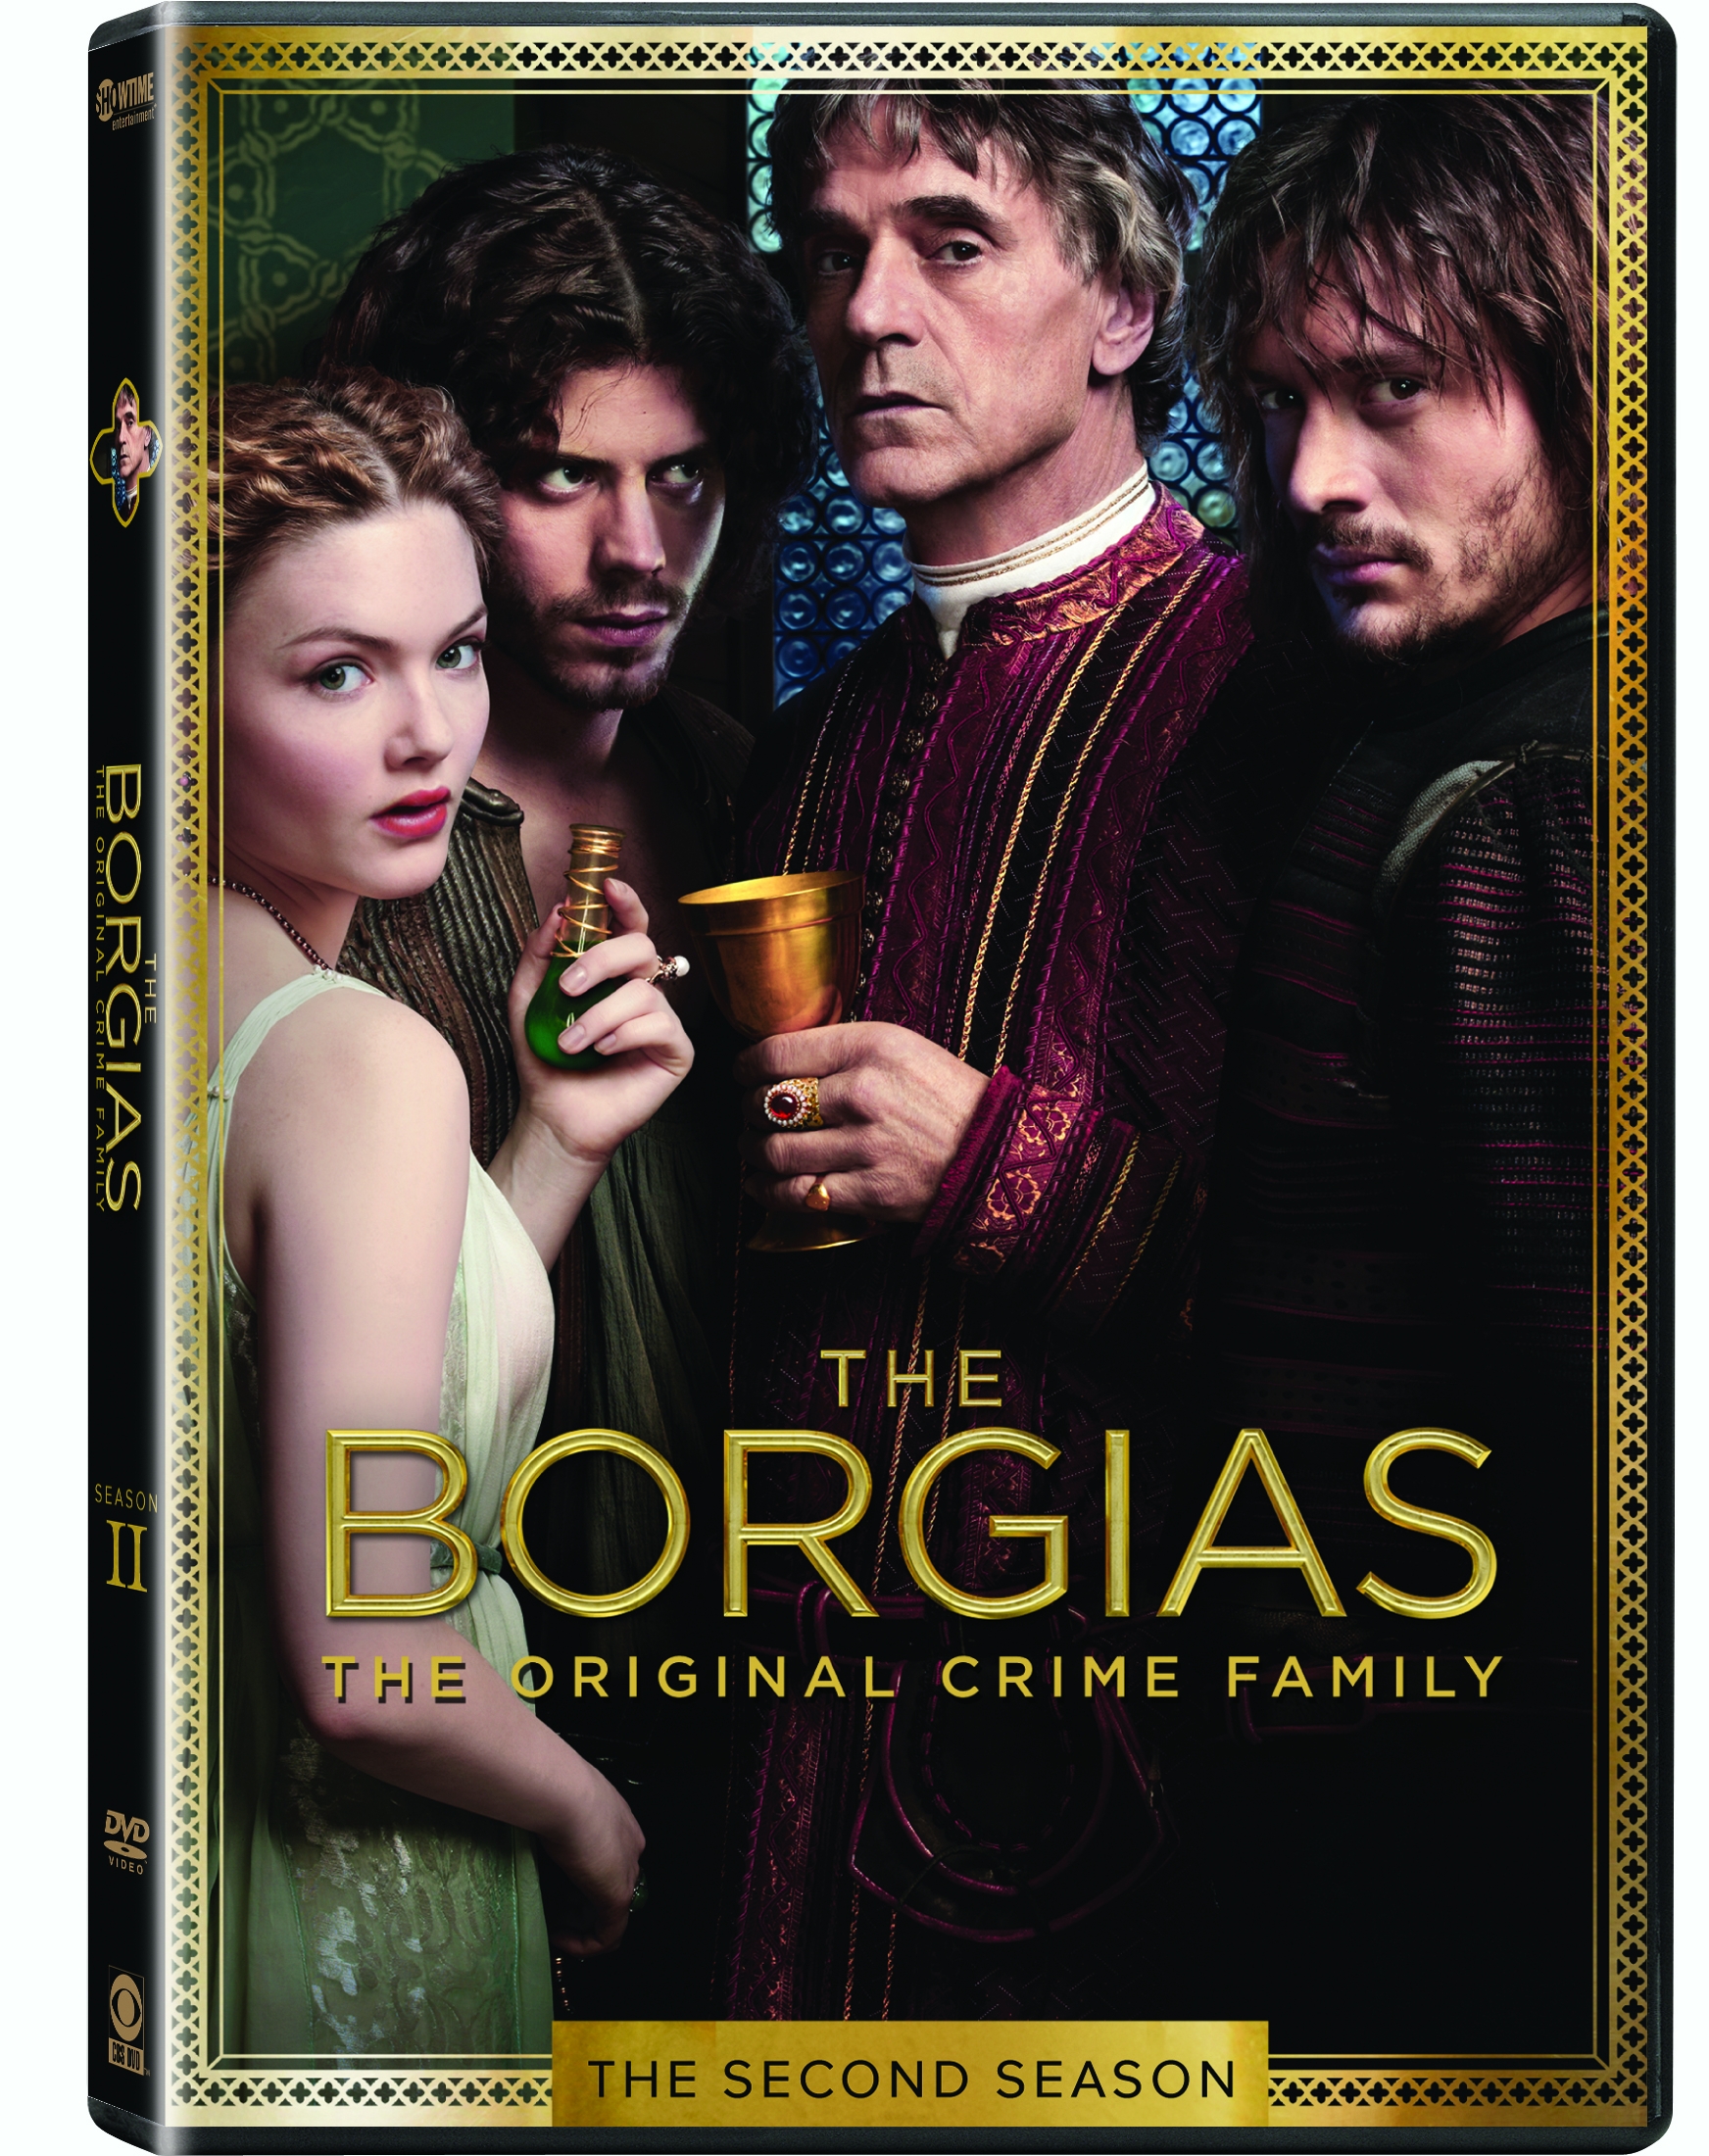 The Borgias Season 2